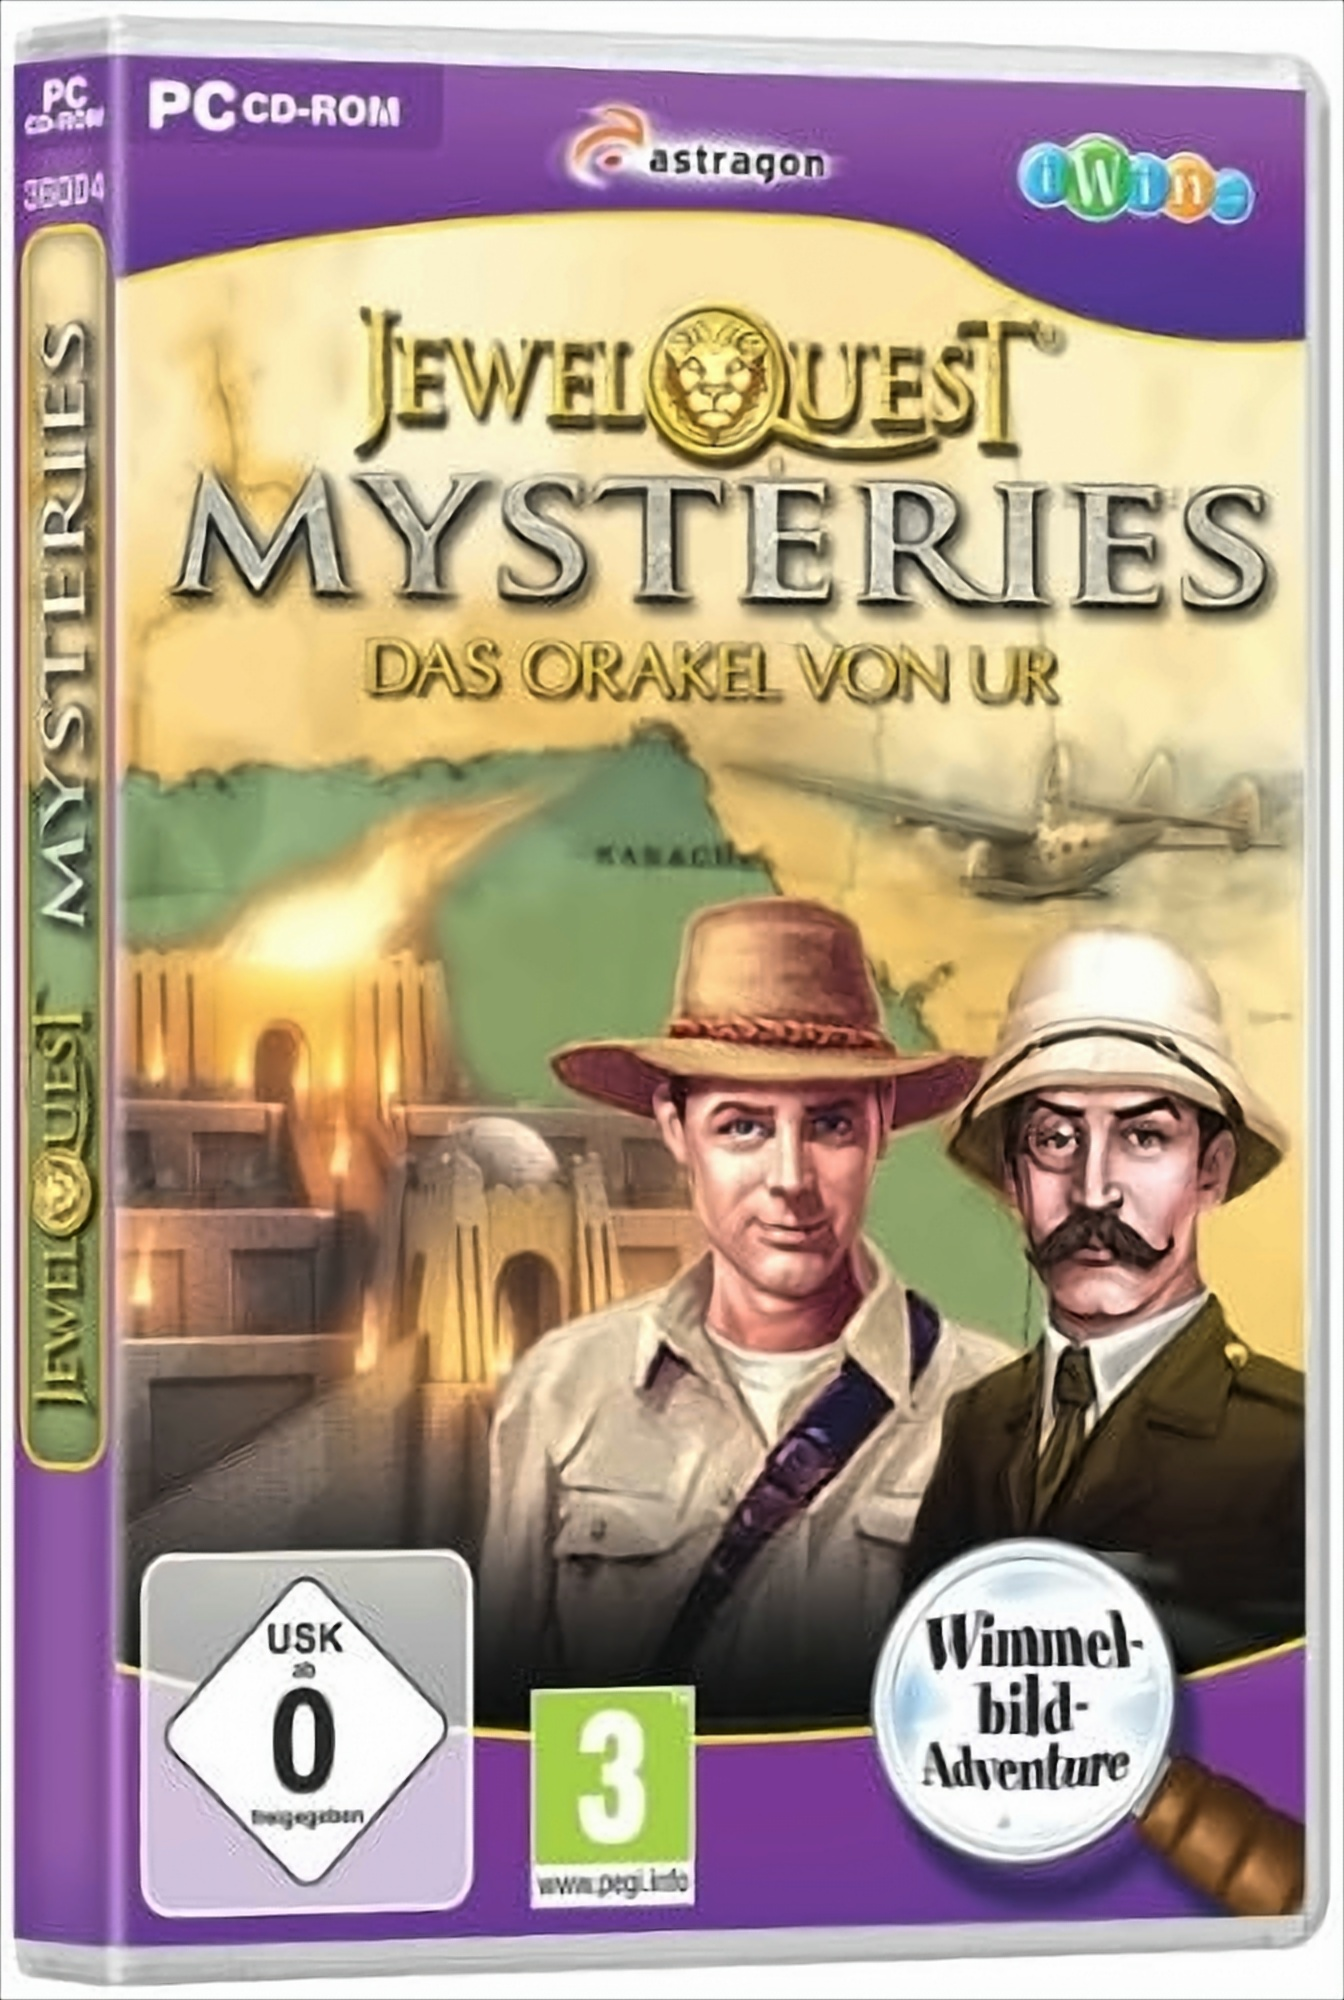 Das Ur von Orakel - Mysteries Quest - [PC] 4 Jewel